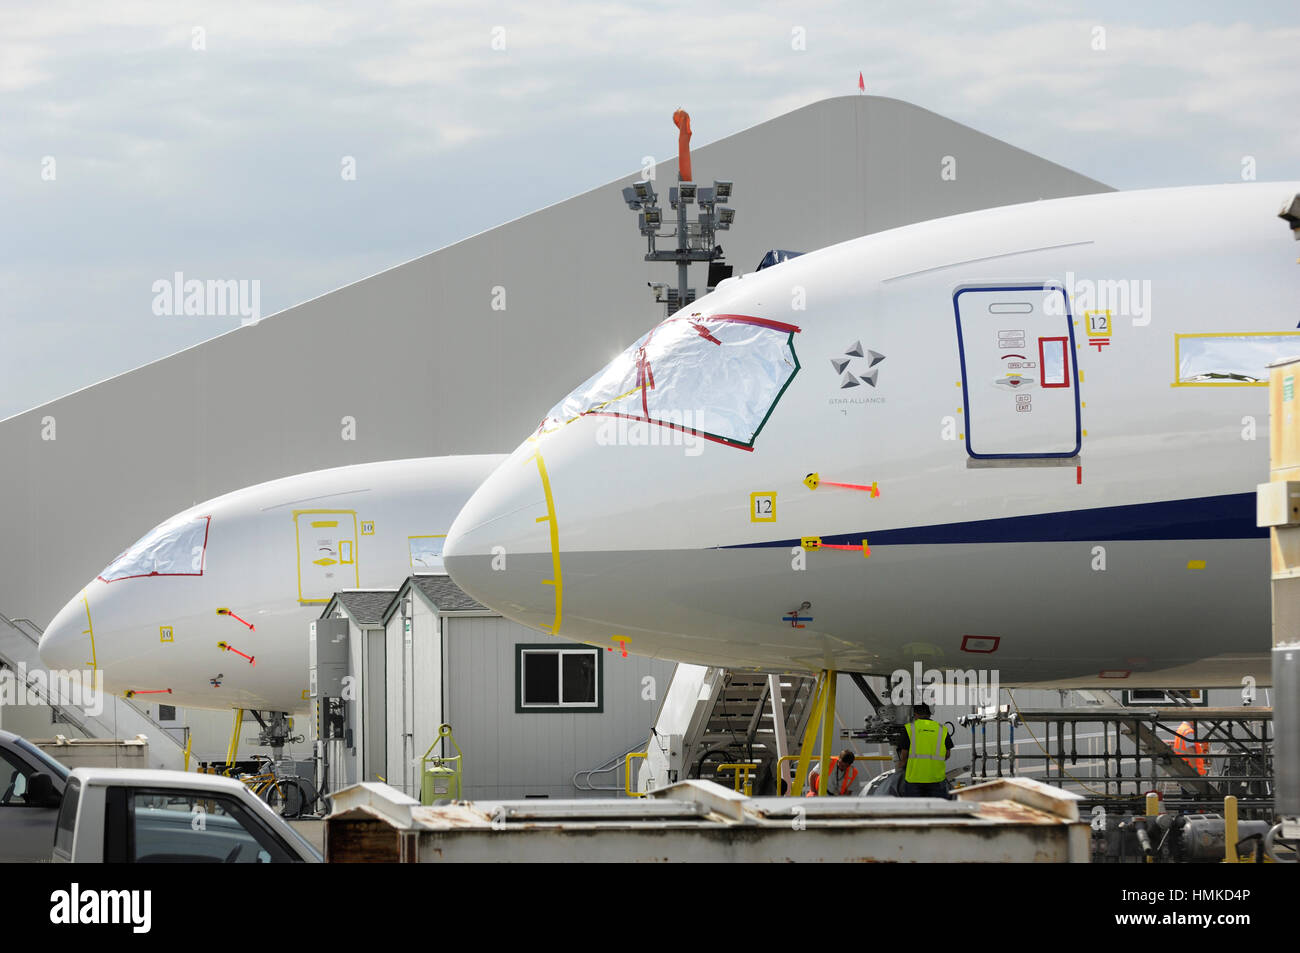 Nasen der ANA All Nippon Airways Boeing 787-8 Dreamliner (12 L/N) und LAN Chile geparkt 787-8 Dreamliner (L/N-10) Stockfoto